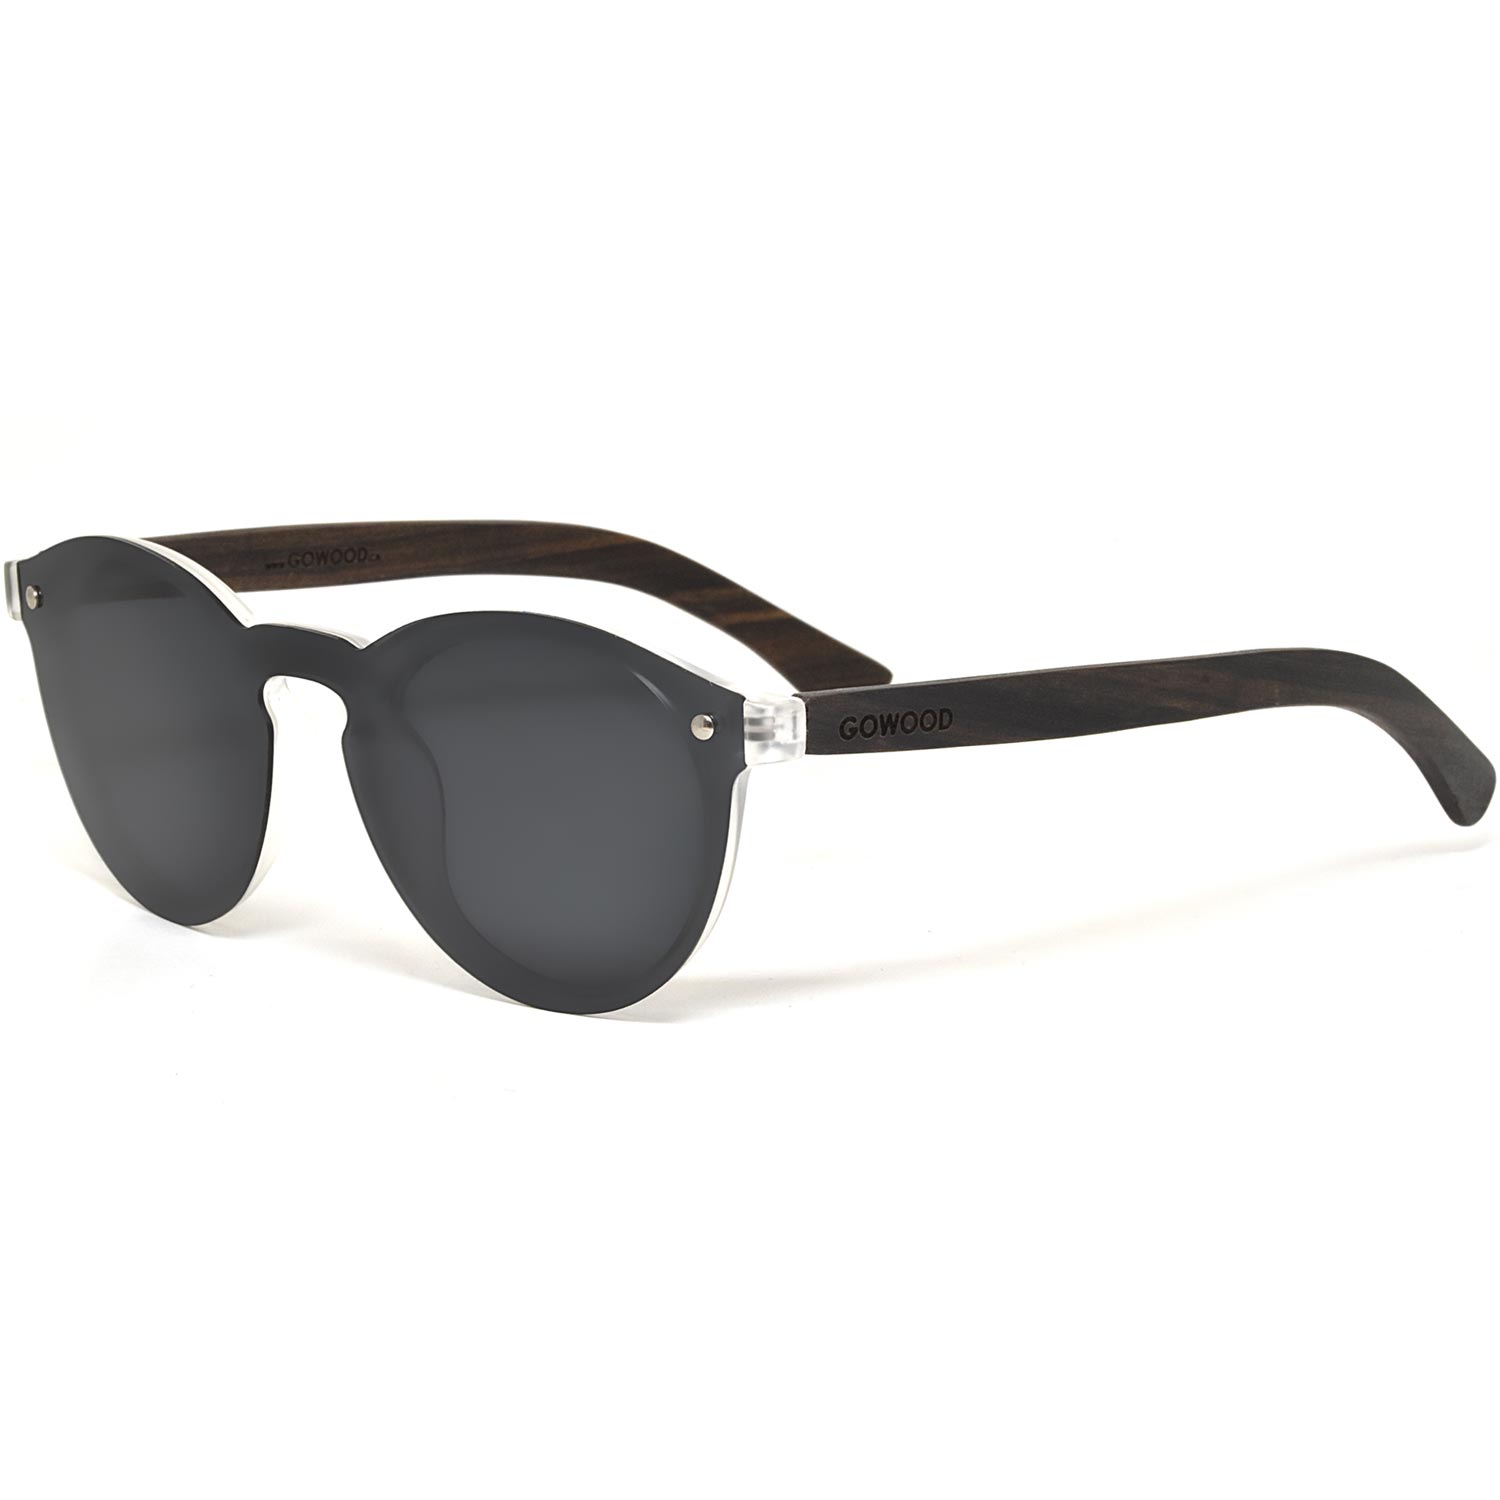 Round ebony wood sunglasses black polarized lenses